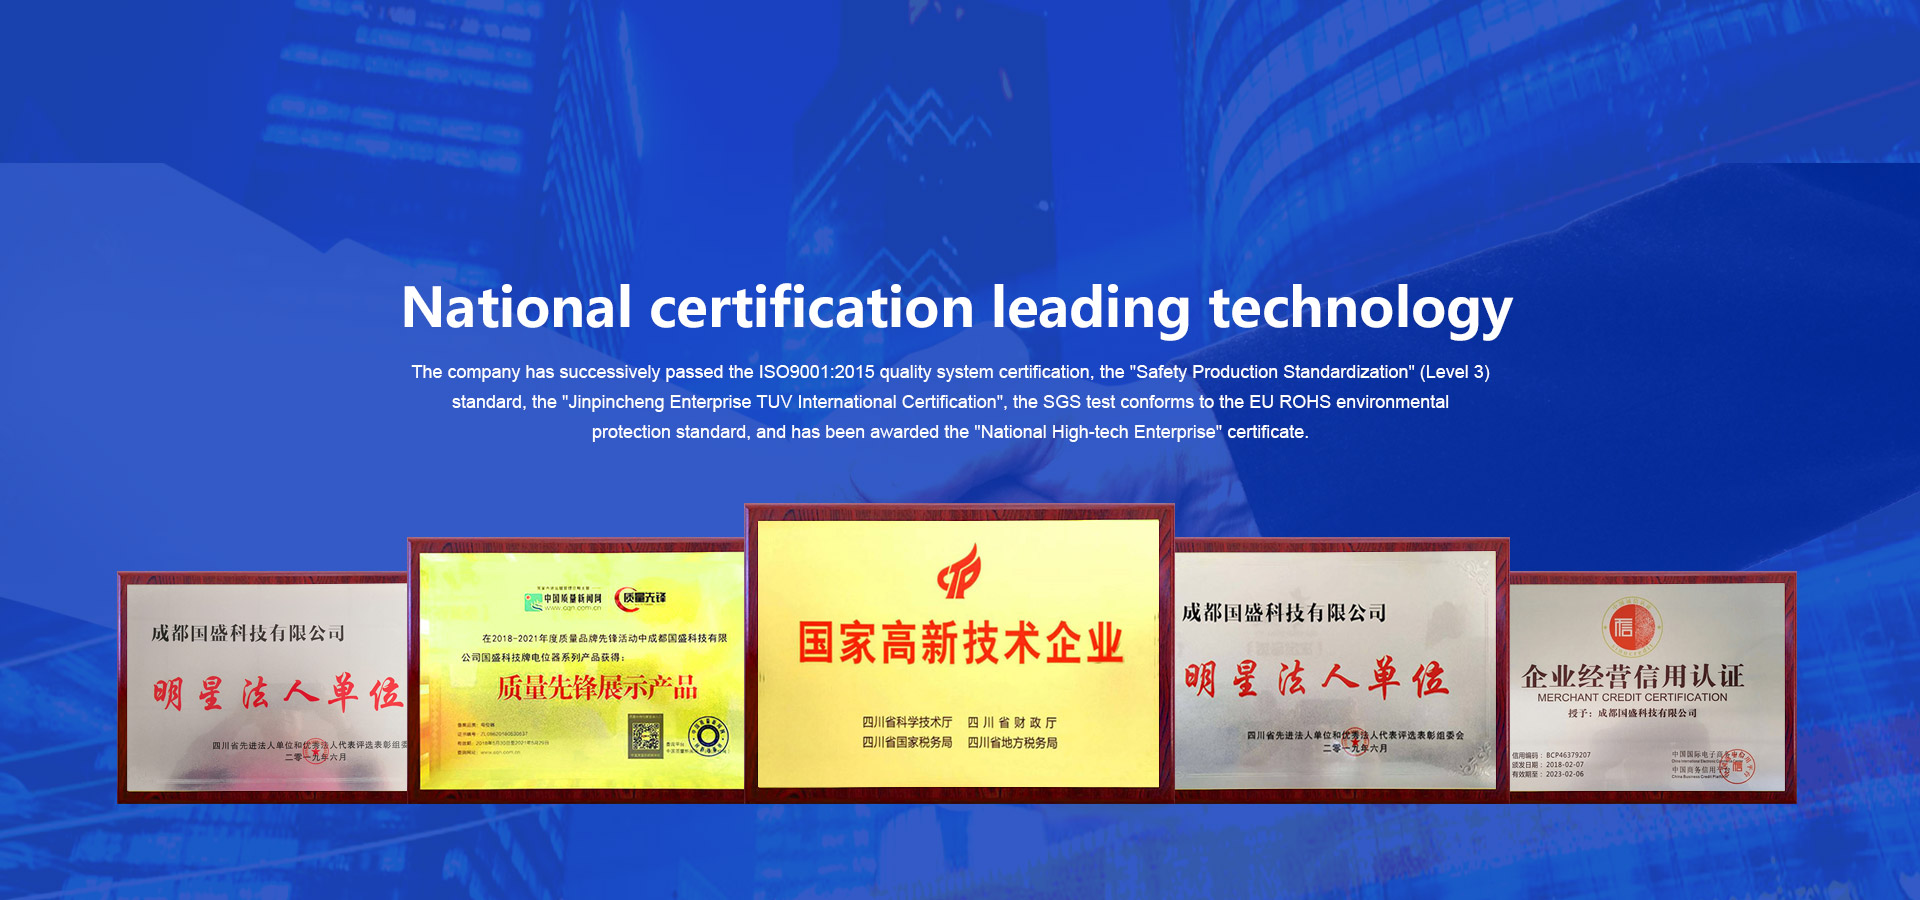 Chengdu Guosheng Technology Co